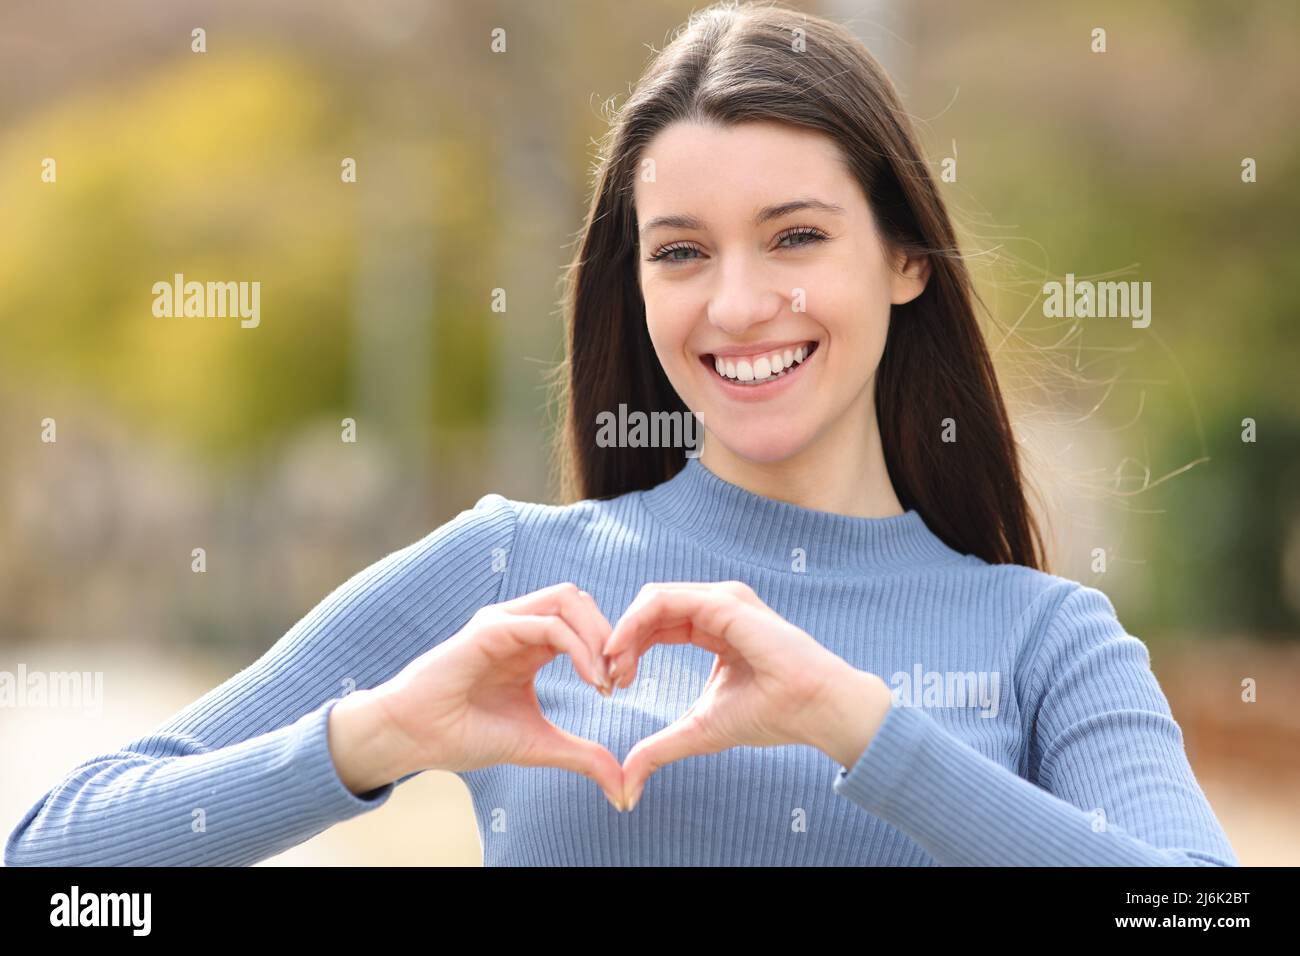 Vue de face portrait d'un adolescent heureux en forme de coeur avec ses mains dans un parc Banque D'Images